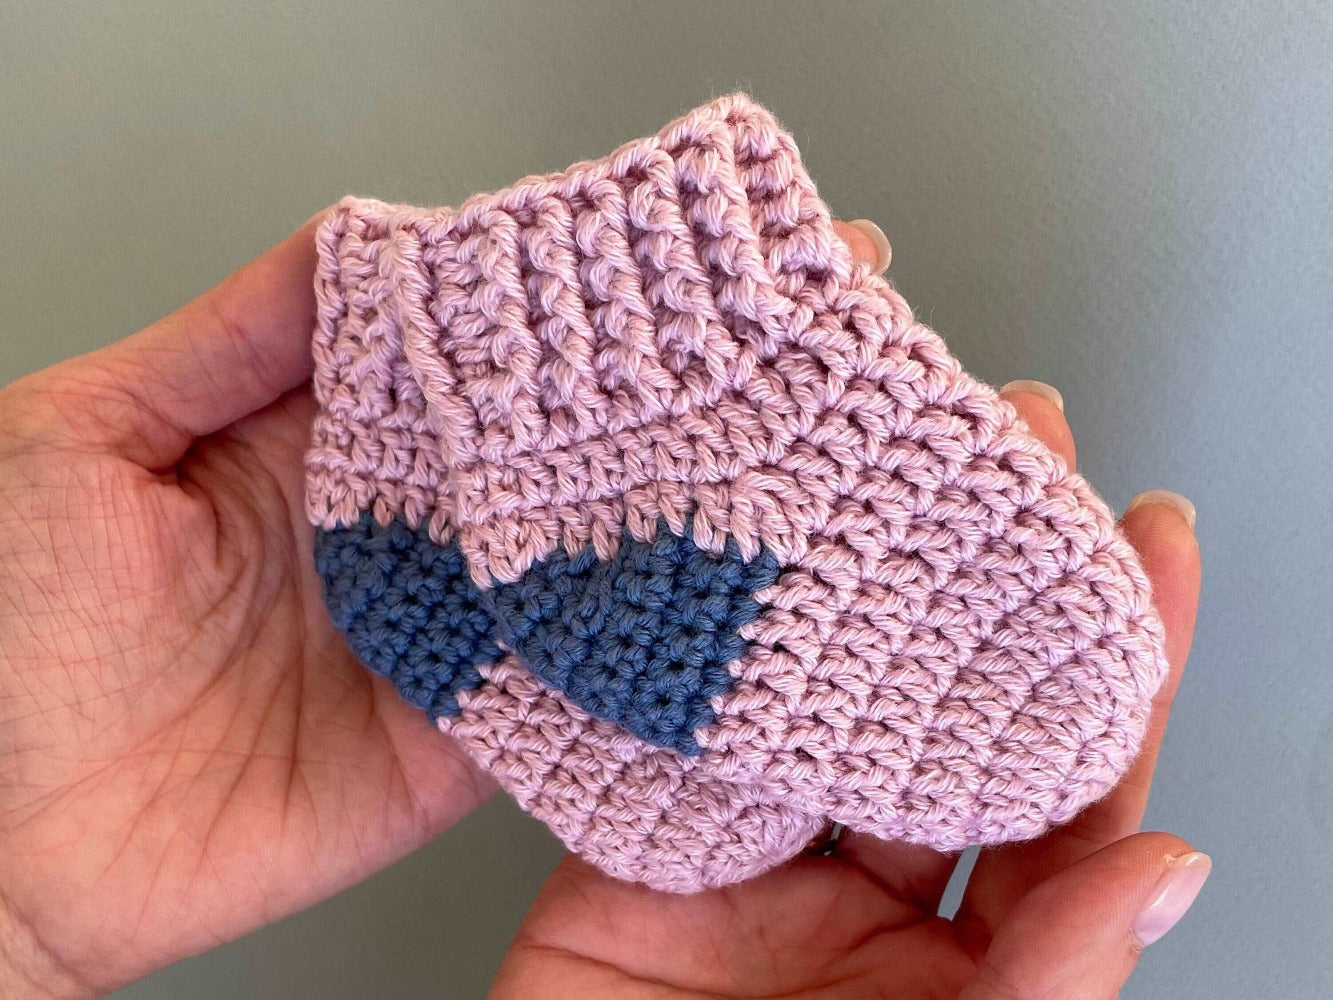 Baby socks crochet pattern for 0-3 months